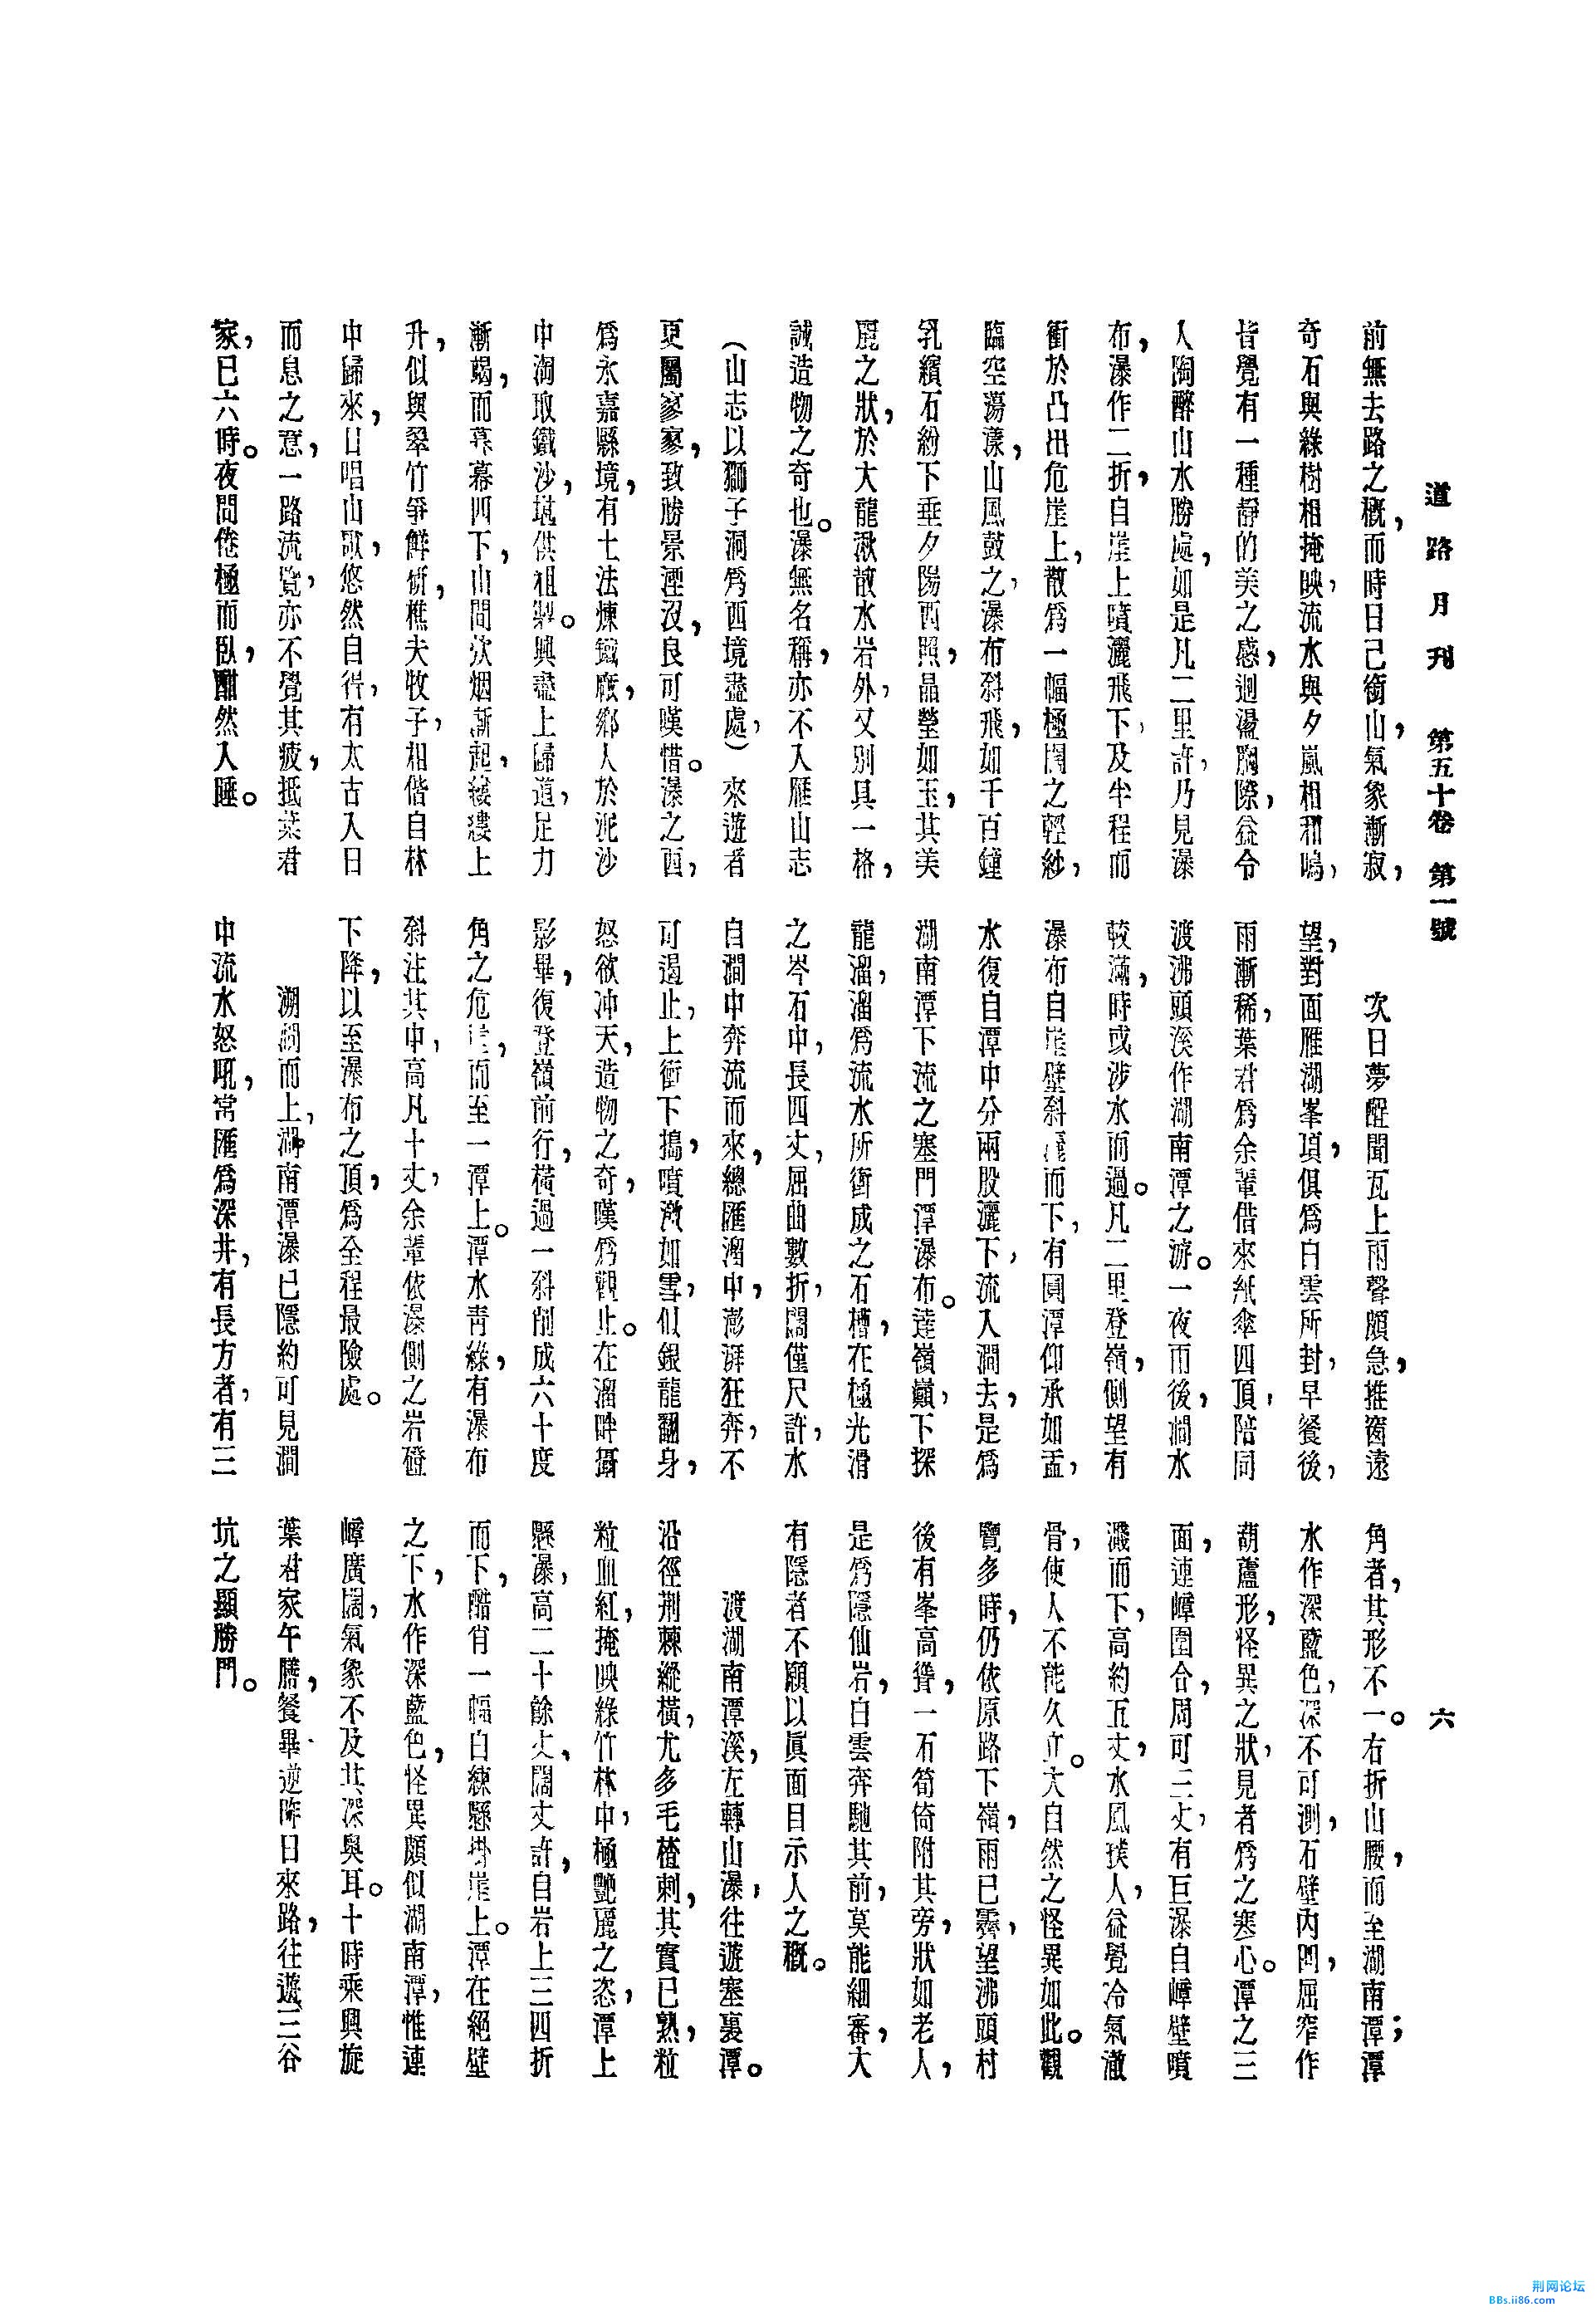 雁荡南阁探胜记[J].道路月刊,1936,(第1期)_页面_3.jpg